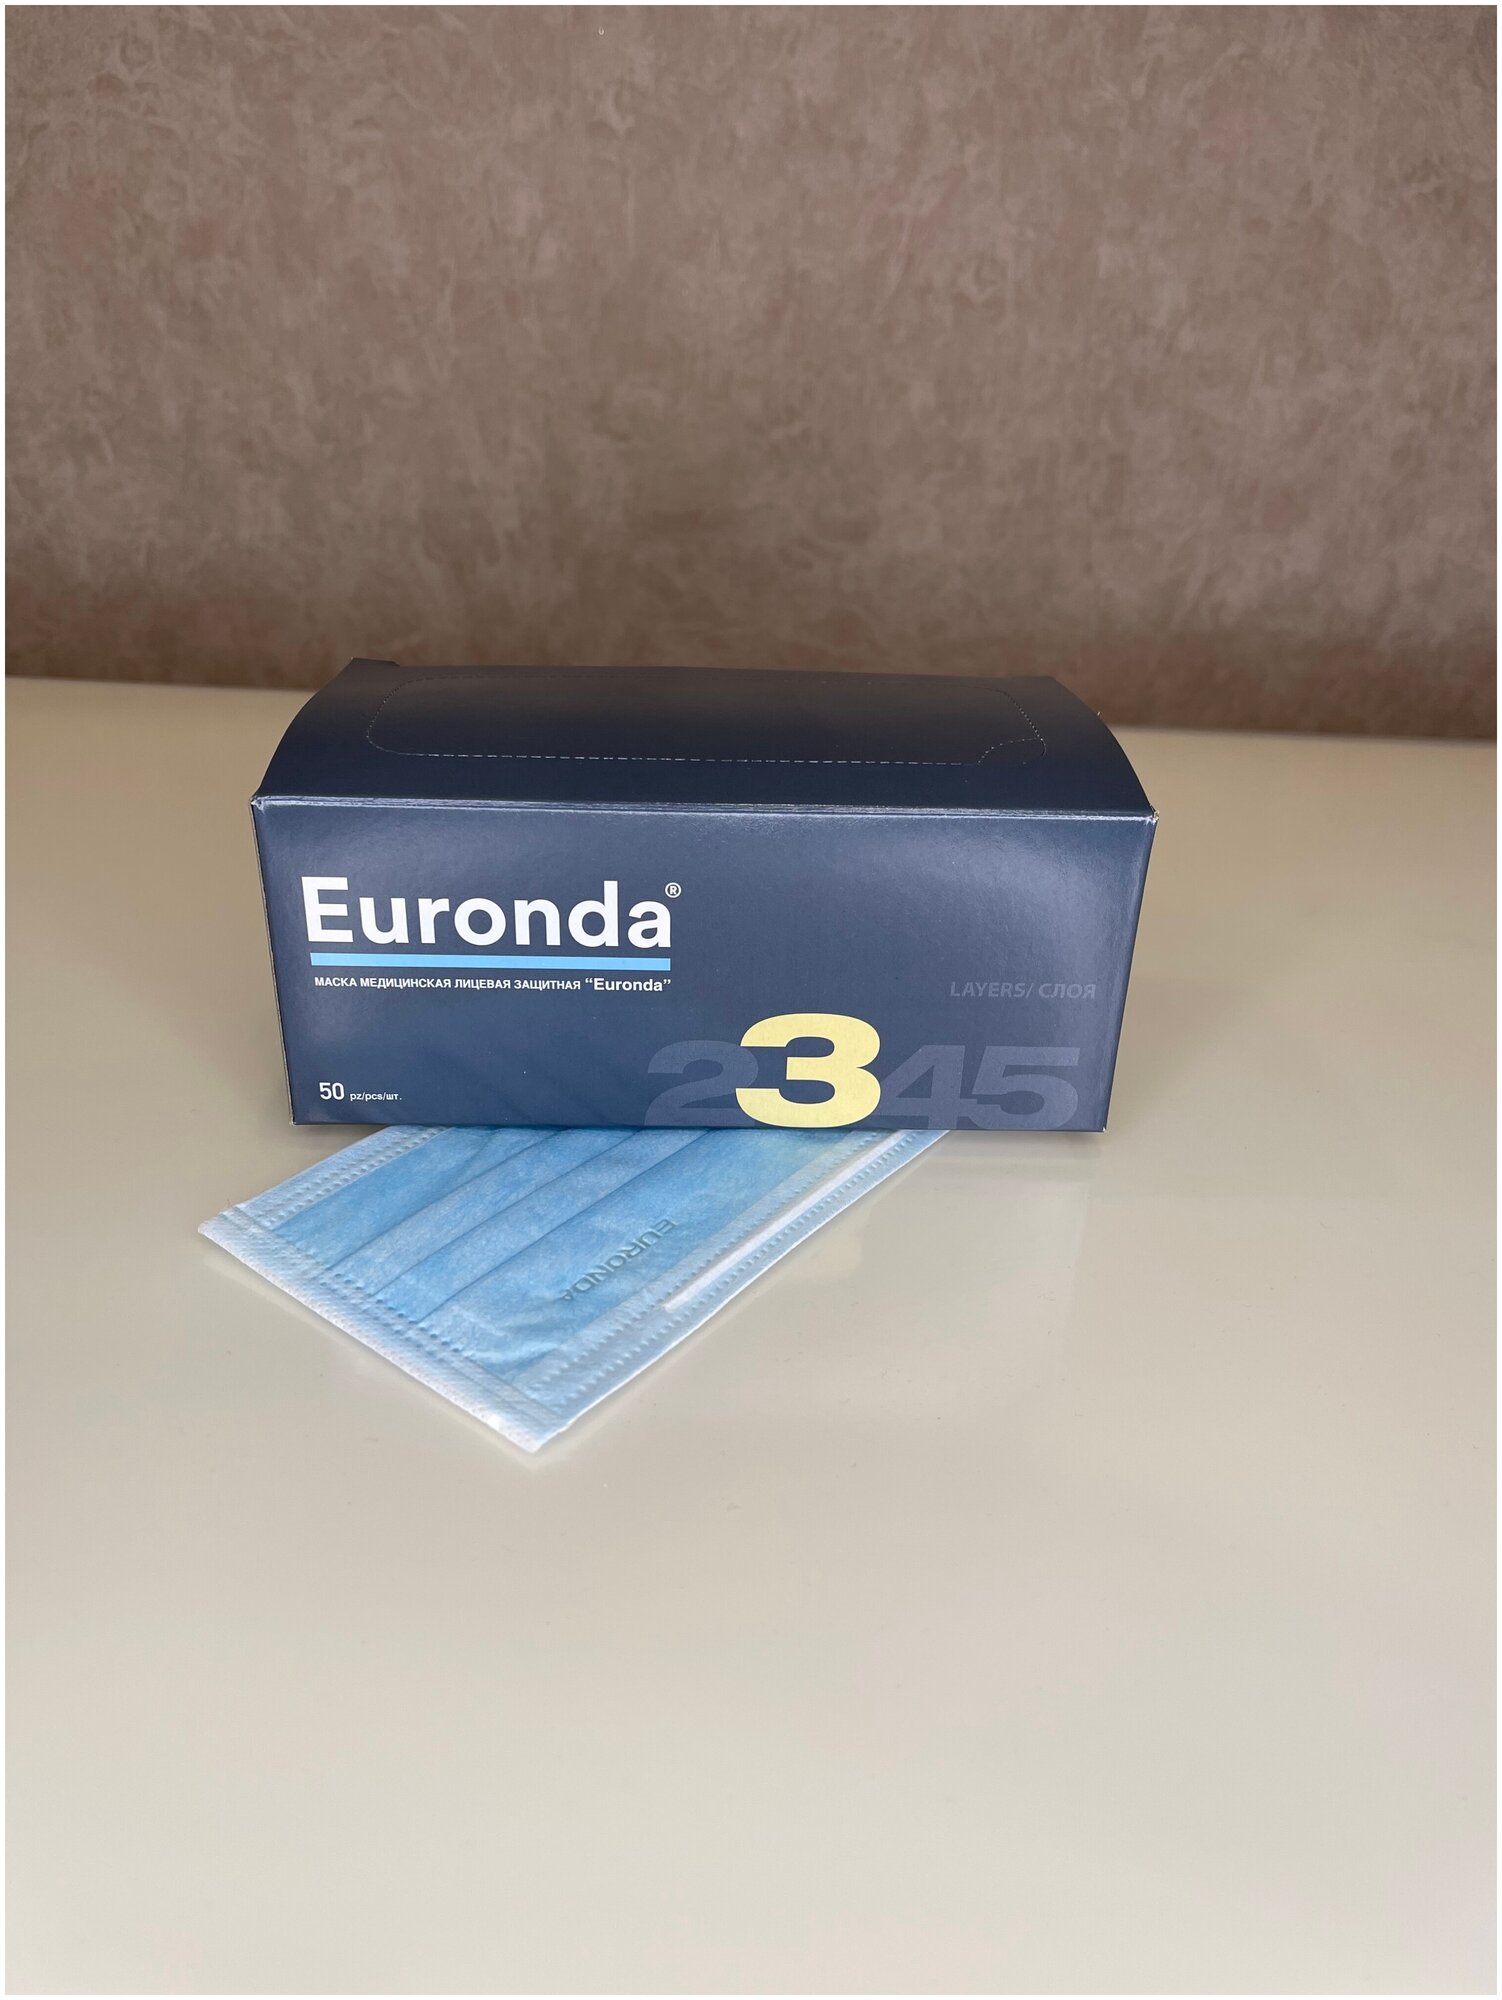   Euronda Monoart  - , 50 .  , 5 .